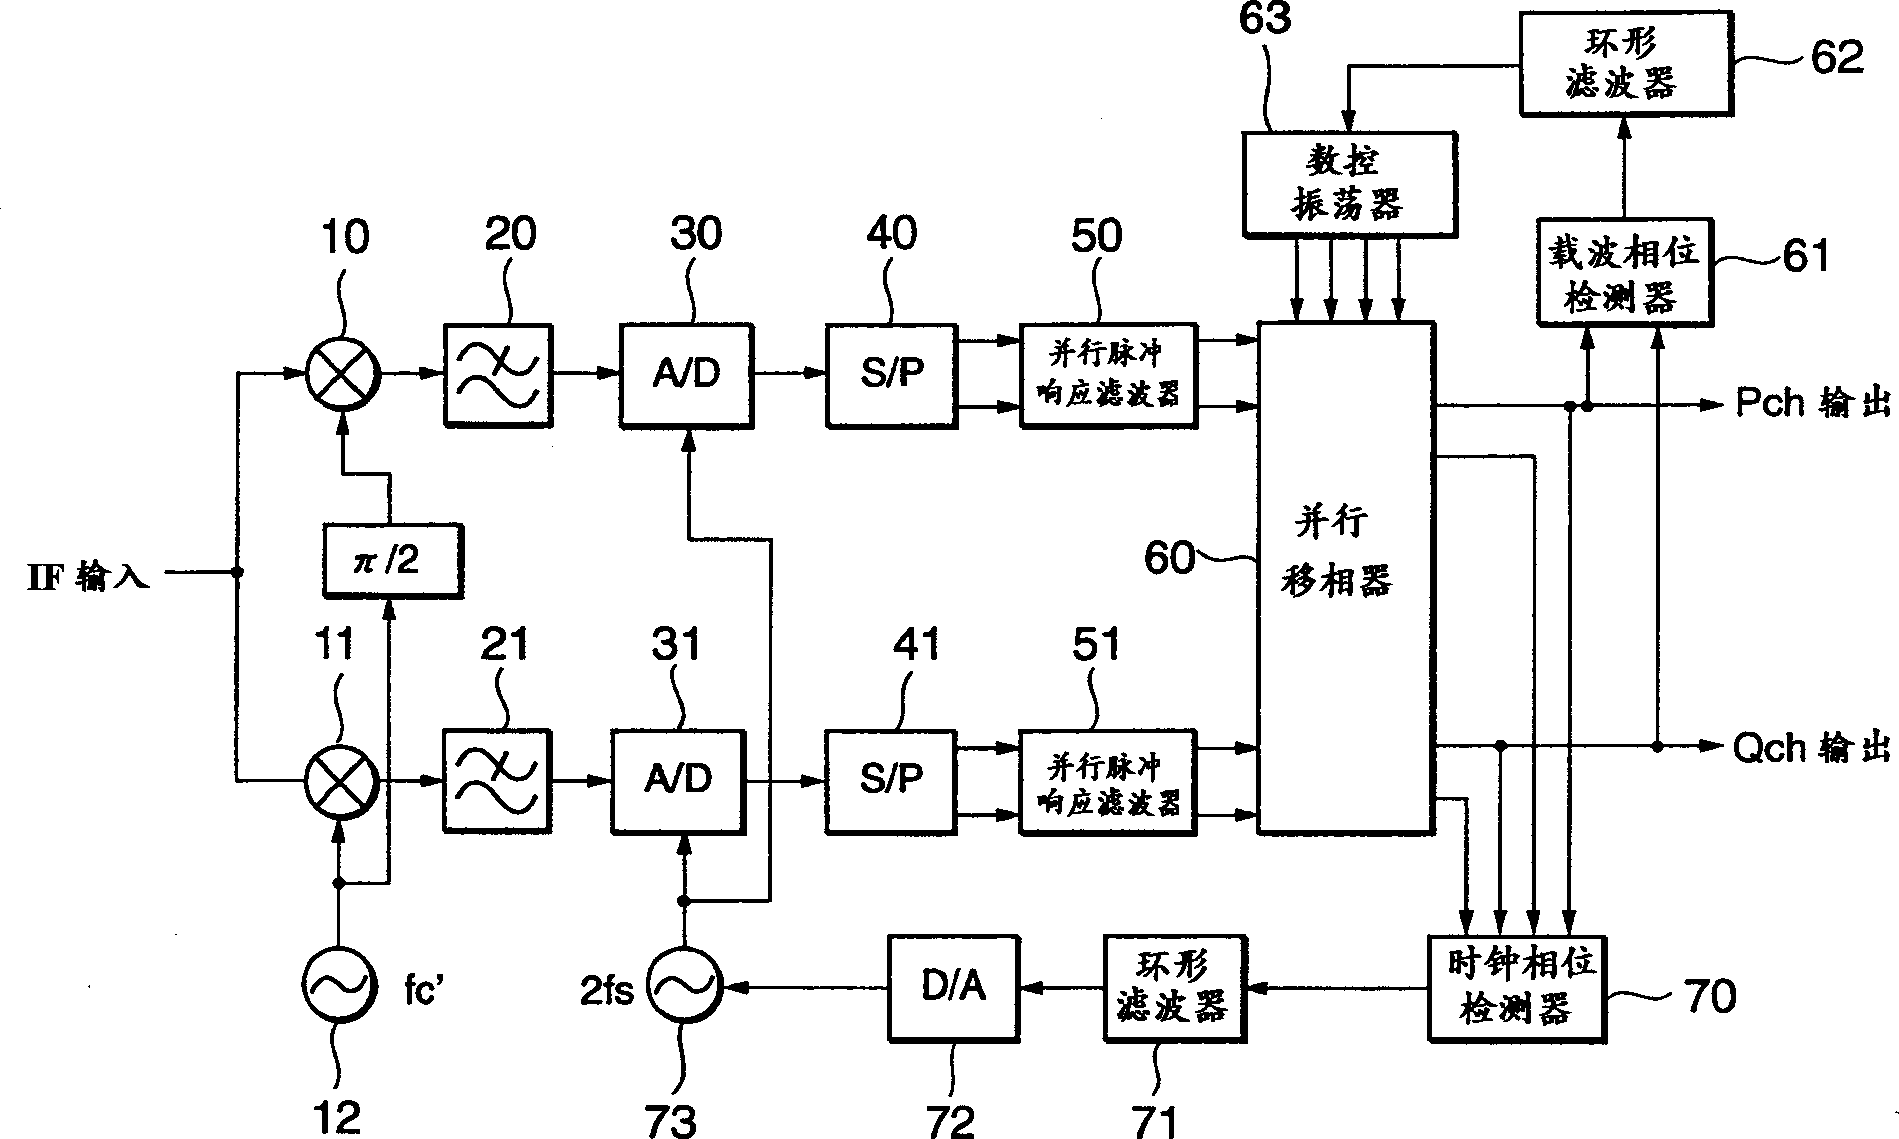 Demodulator for processing digital signal